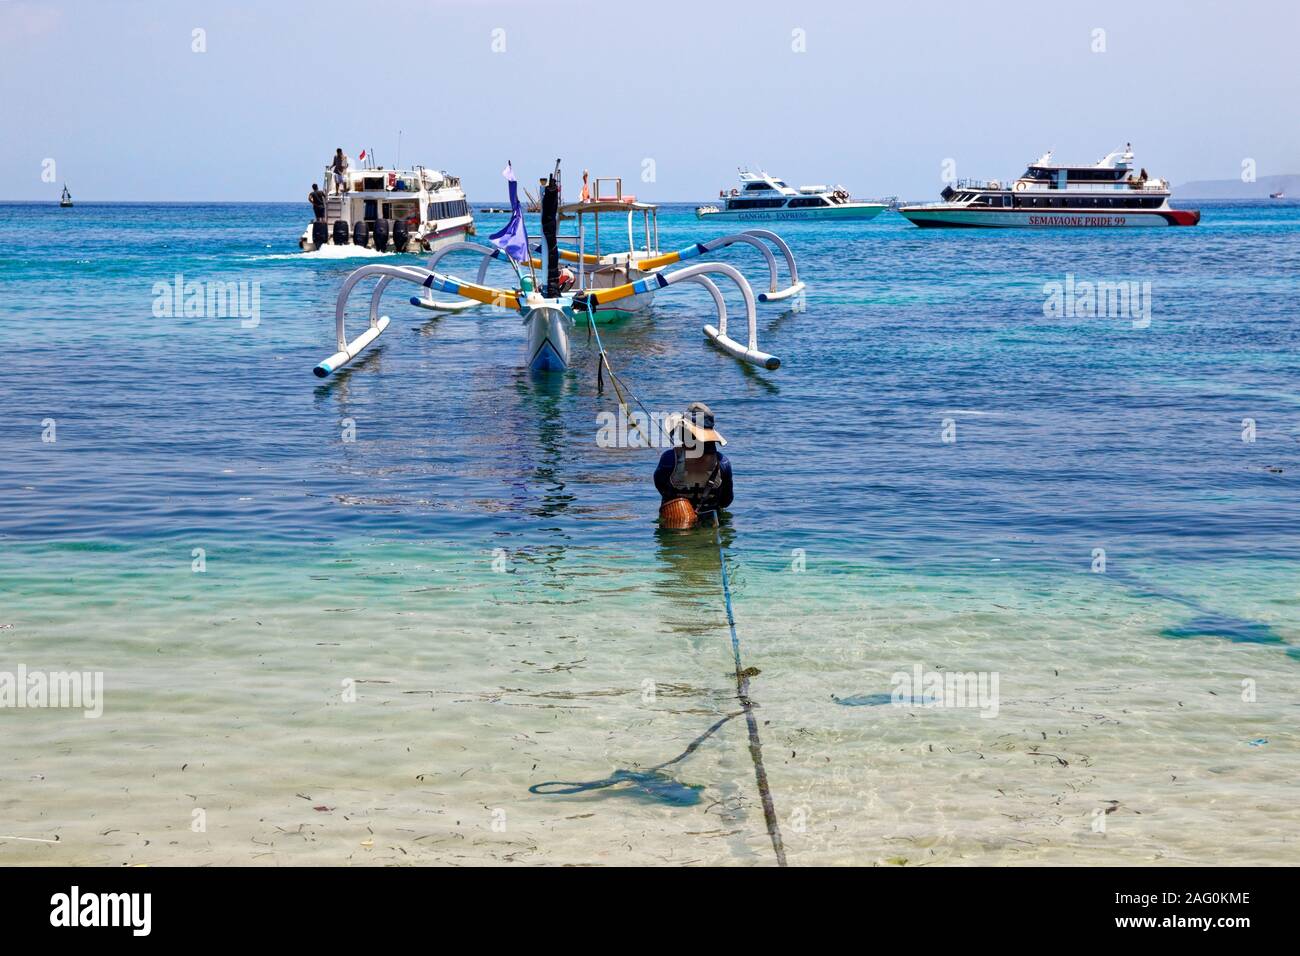 Habituellement jour de travail de l'homme dans l'eau ancrage de la coquille en bois, debout dans les eaux de la mer balinaise Banque D'Images